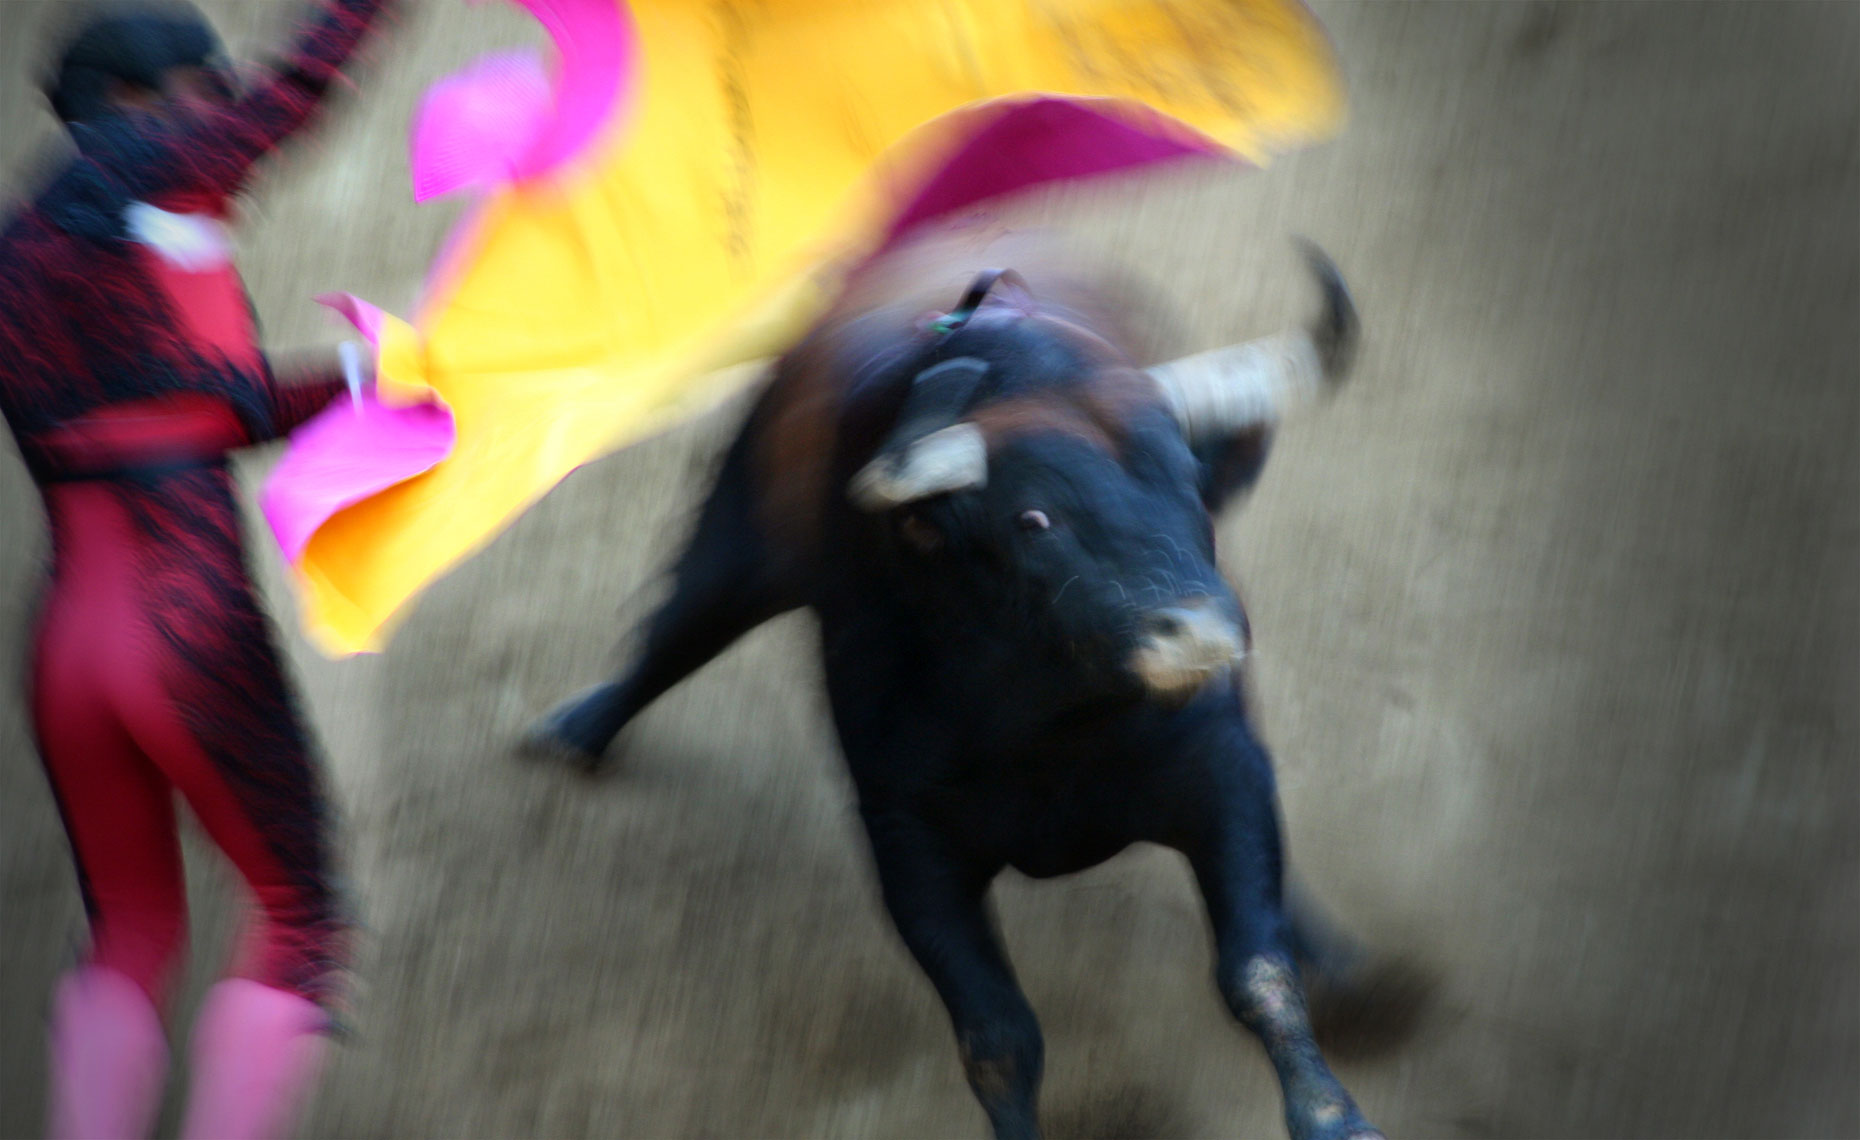 bullfight.jpg